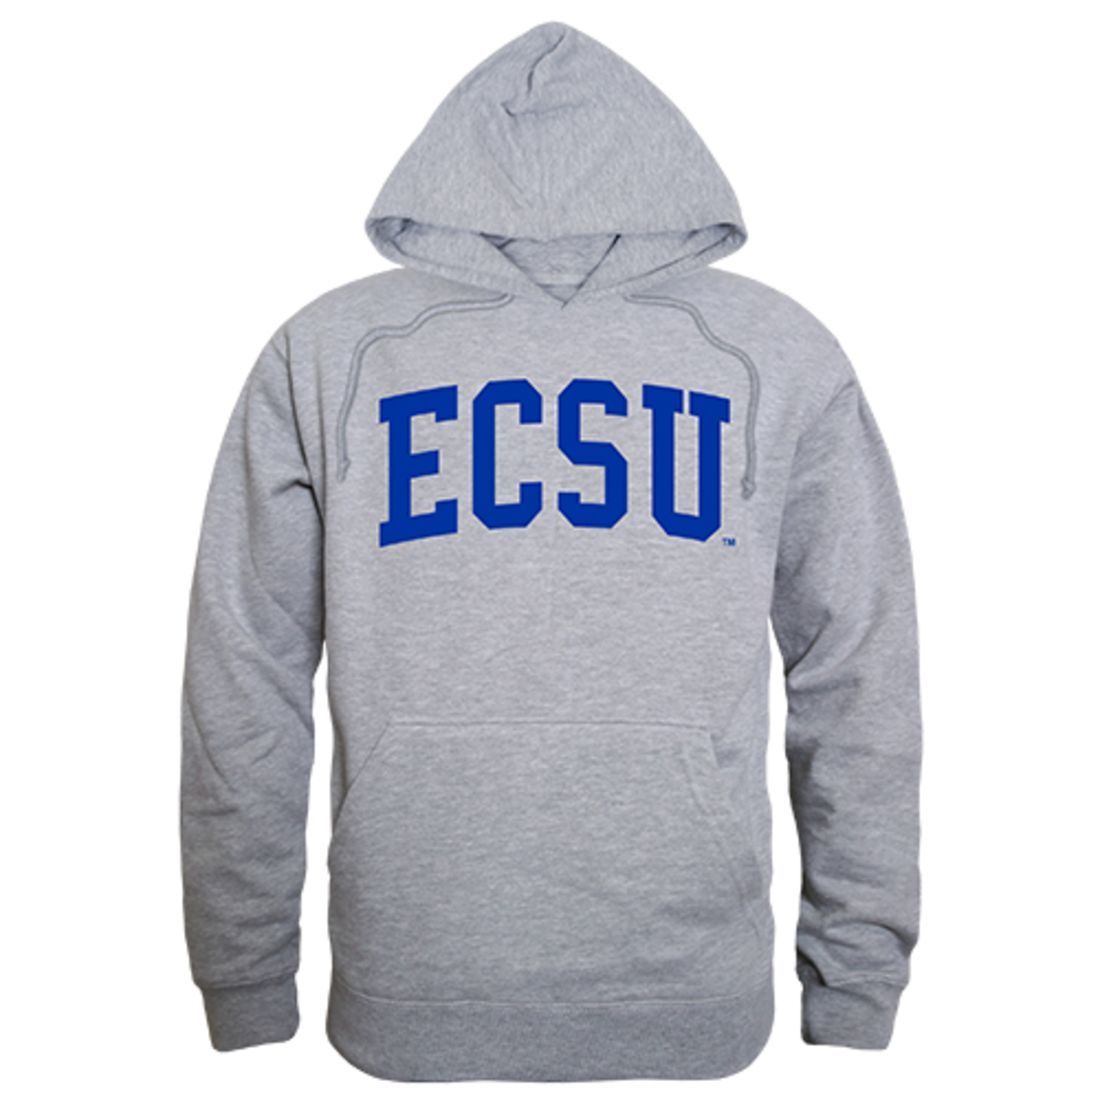 ECSU Elizabeth City State University Game Day Hoodie Sweatshirt Heather Grey-Campus-Wardrobe